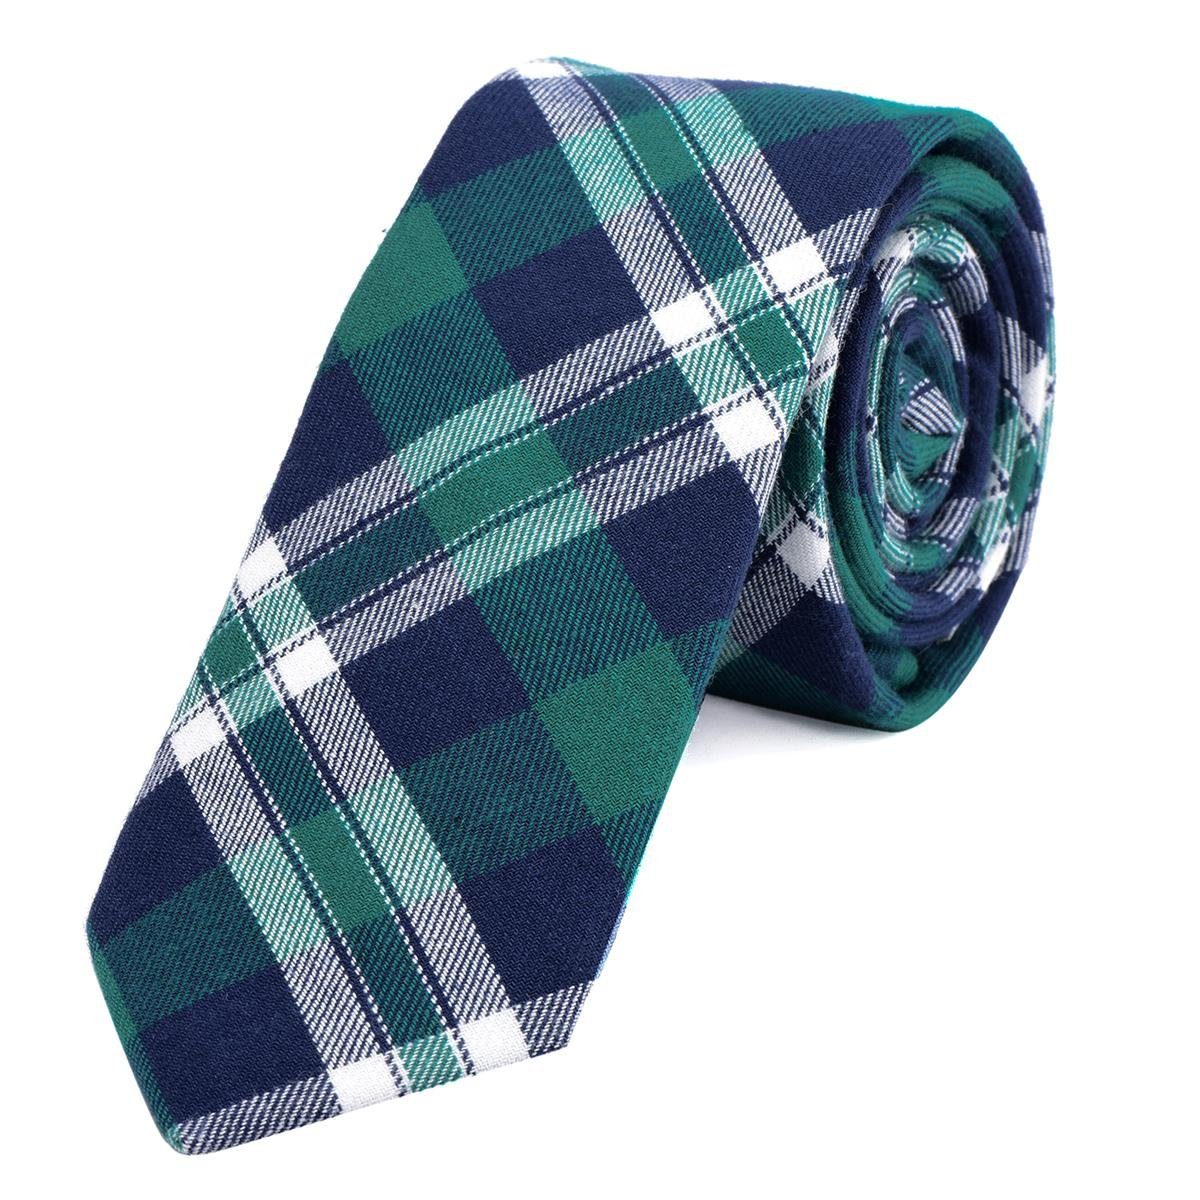 DonDon Krawatte Herren Krawatte 6 cm mit Karos oder Streifen (Packung, 1-St., 1x Krawatte) Baumwolle, kariert oder gestreift, für Büro oder festliche Veranstaltungen blau-grün kariert